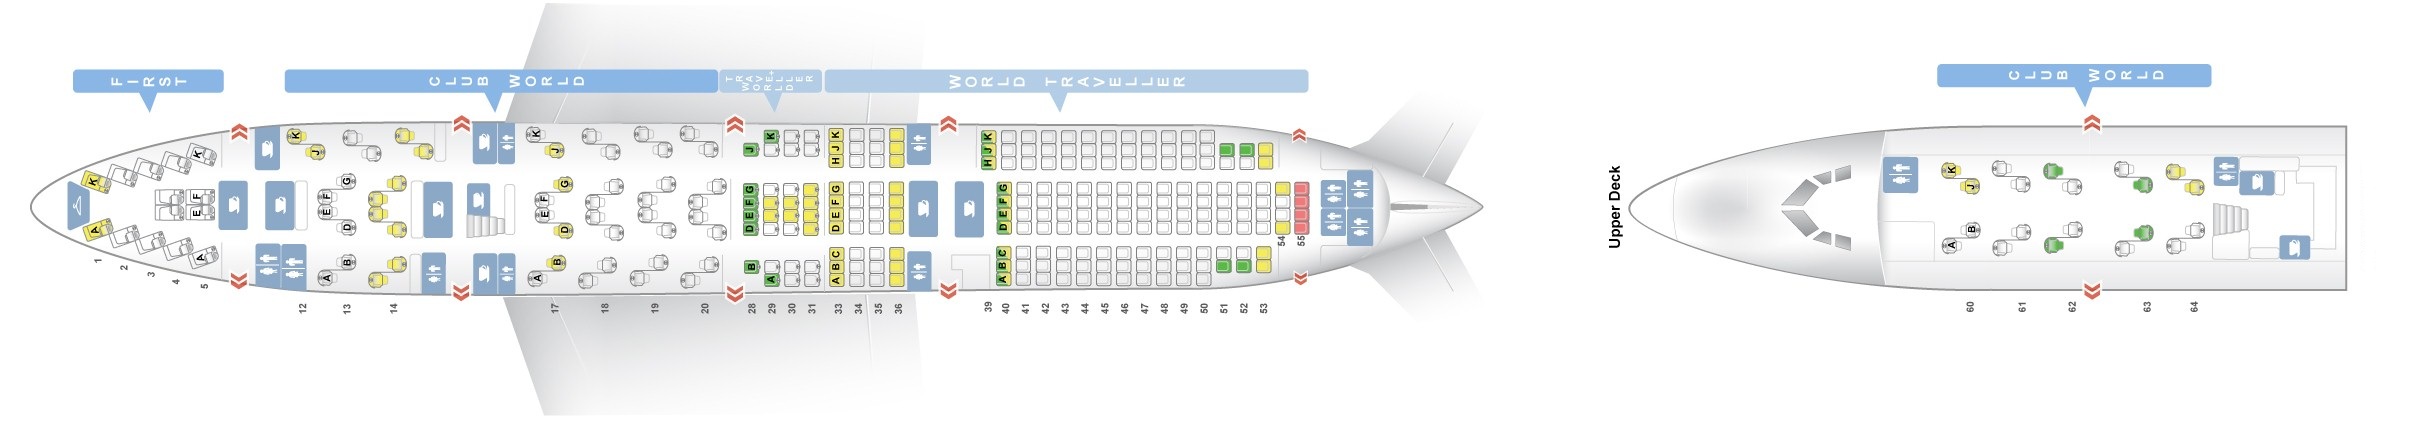 British Airways 747 Seat Plan